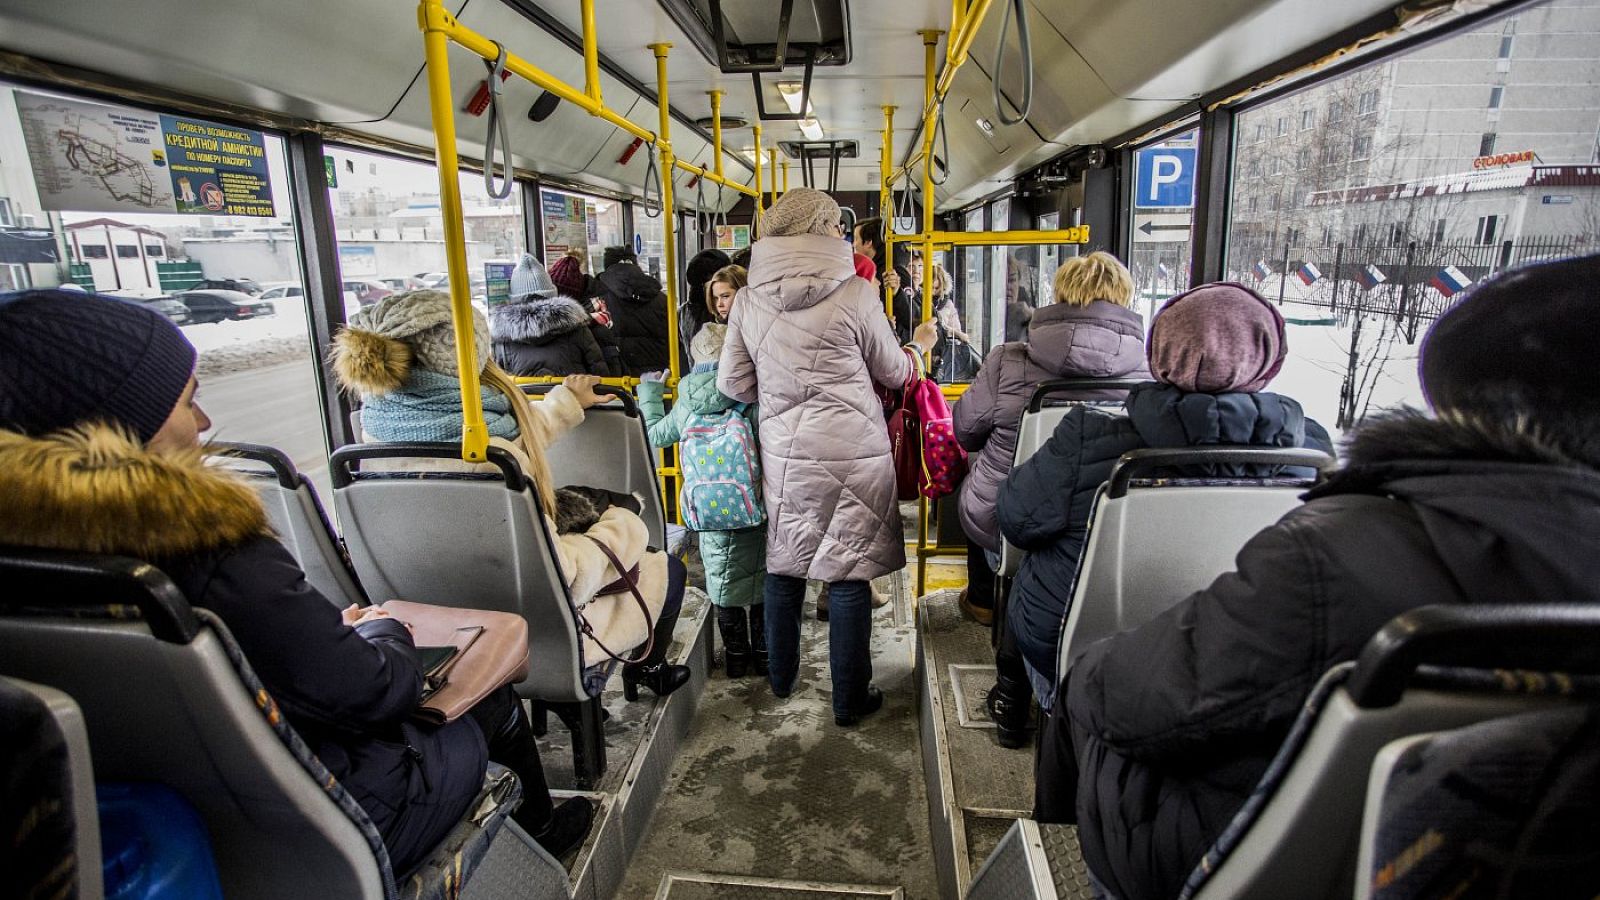 Использование общественного транспорта. Пассажиры в транспорте. Общественный транспорт внутри. Автобус внутри с людьми. Пассажиры общественного транспорта.